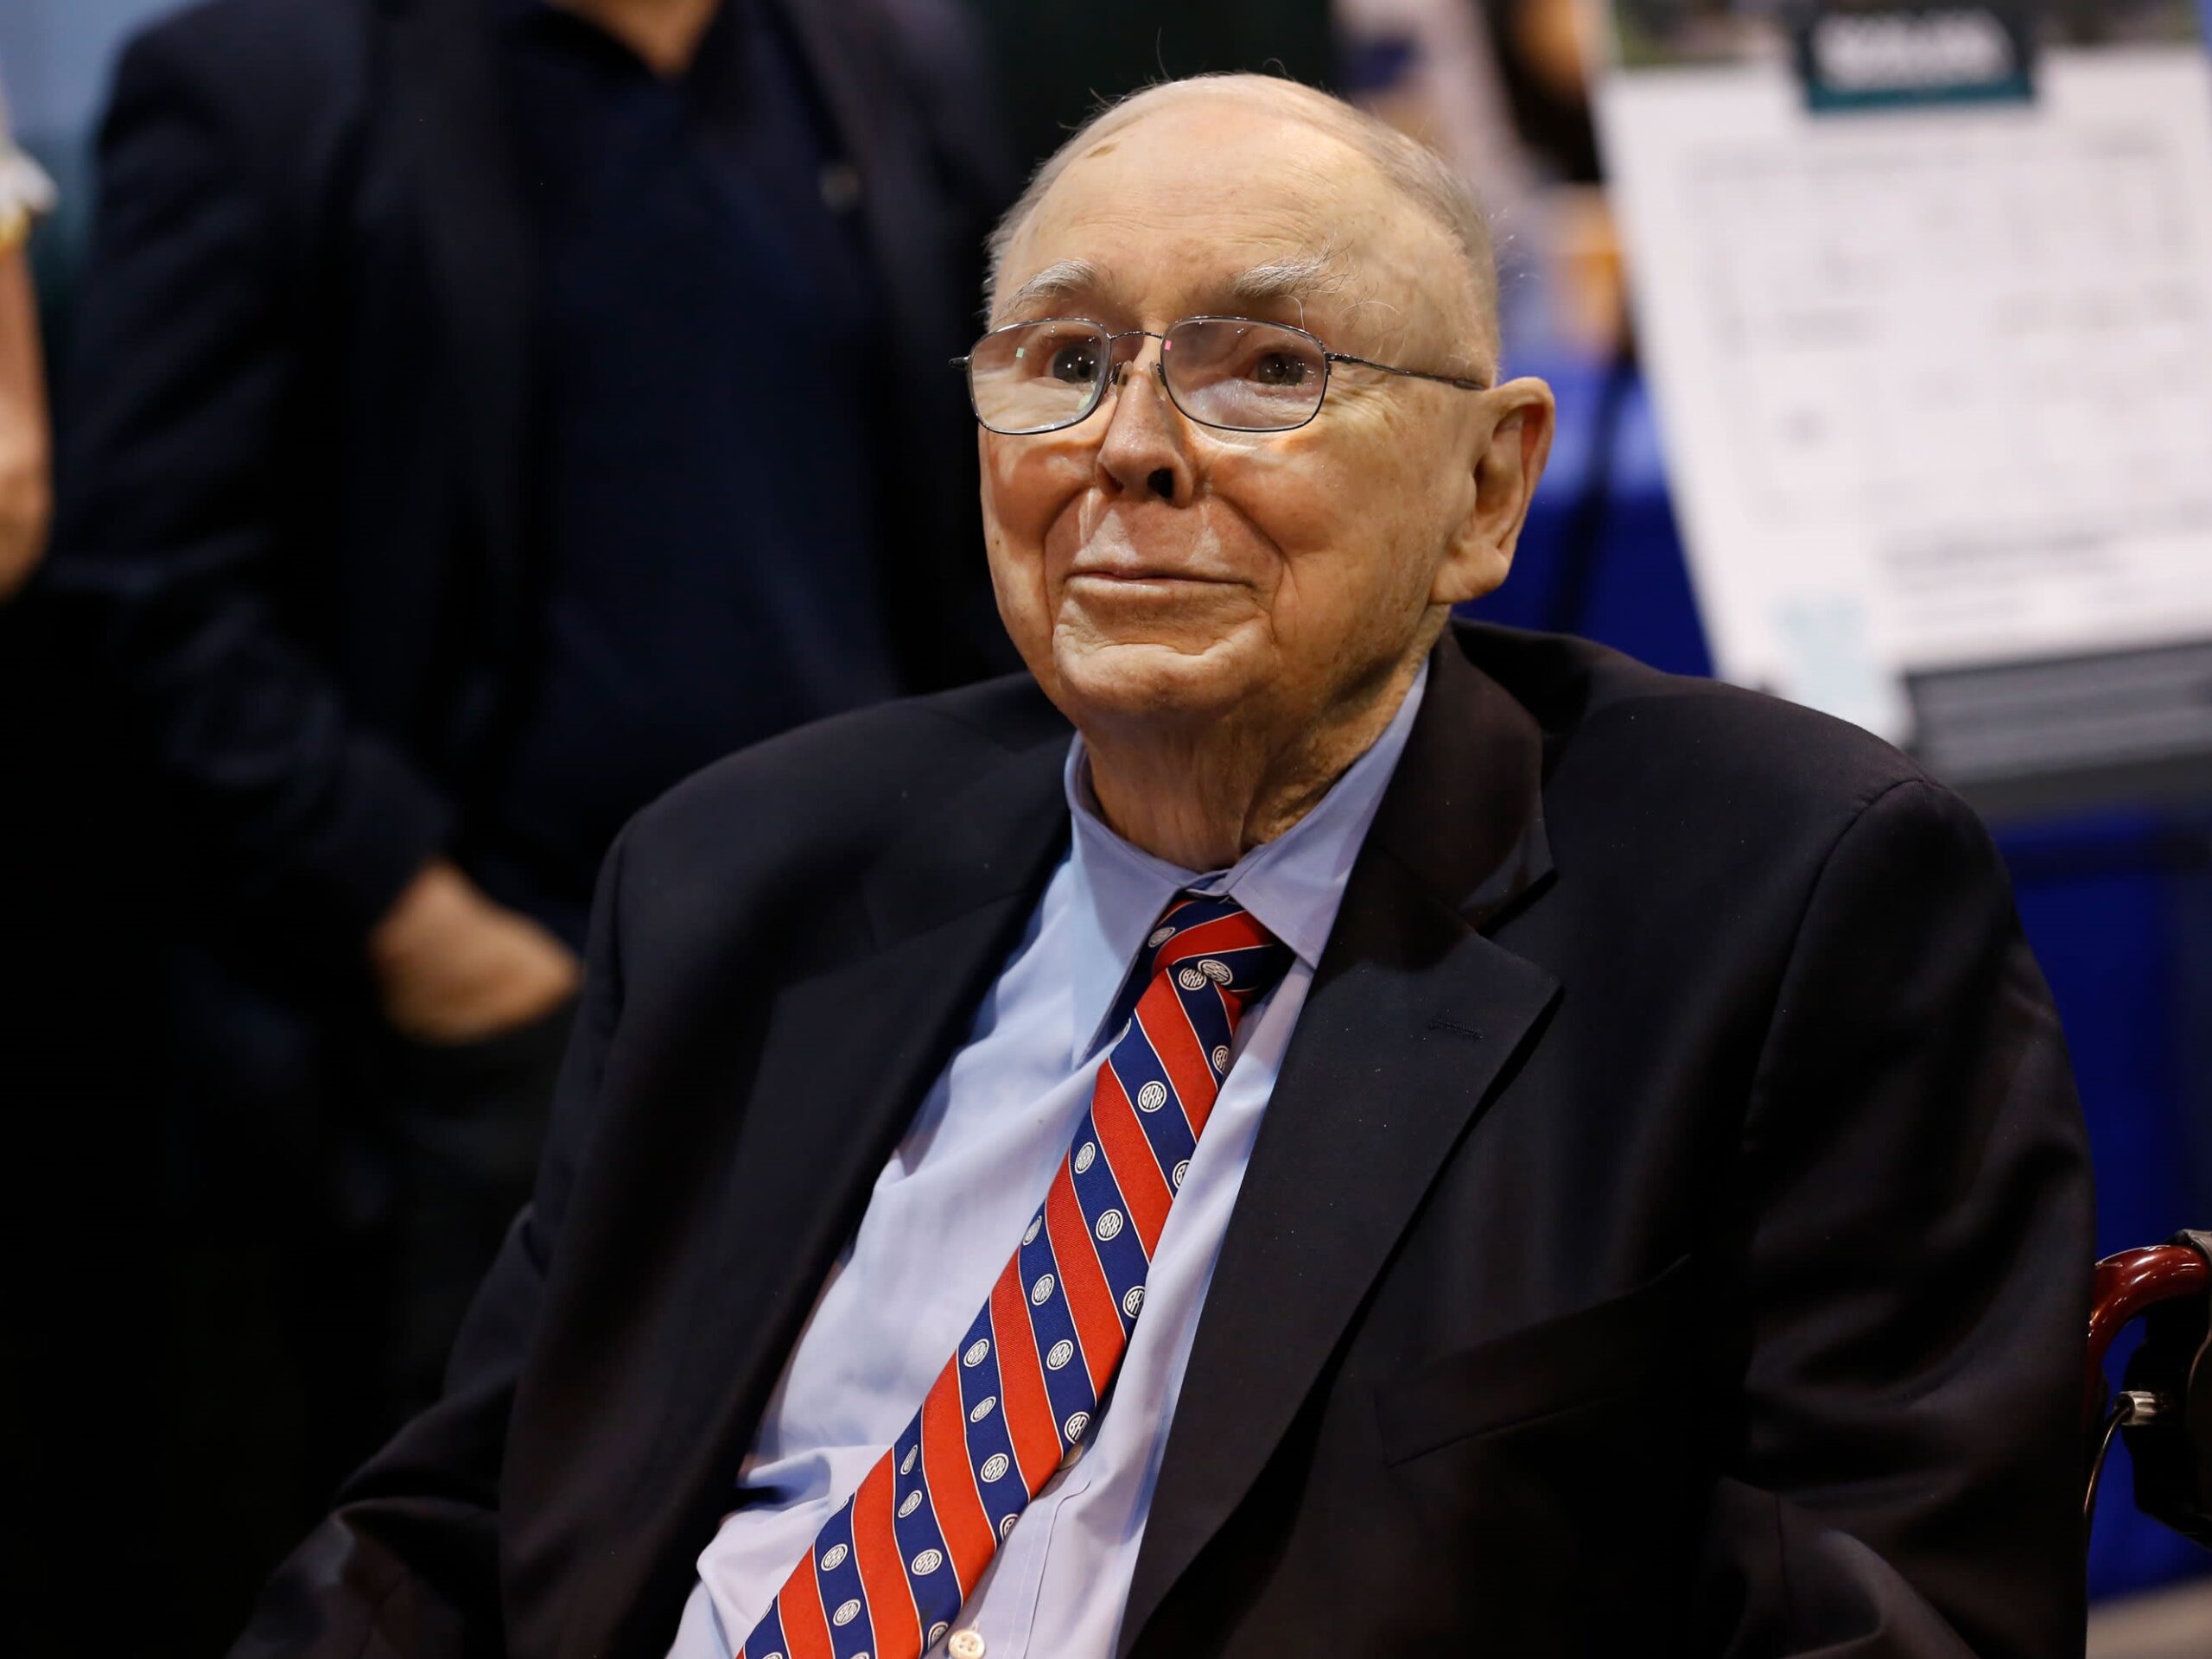 Charlie Munger, legenda a pravá ruka Warrena Buffeta, skonal vo veku 99 rokov